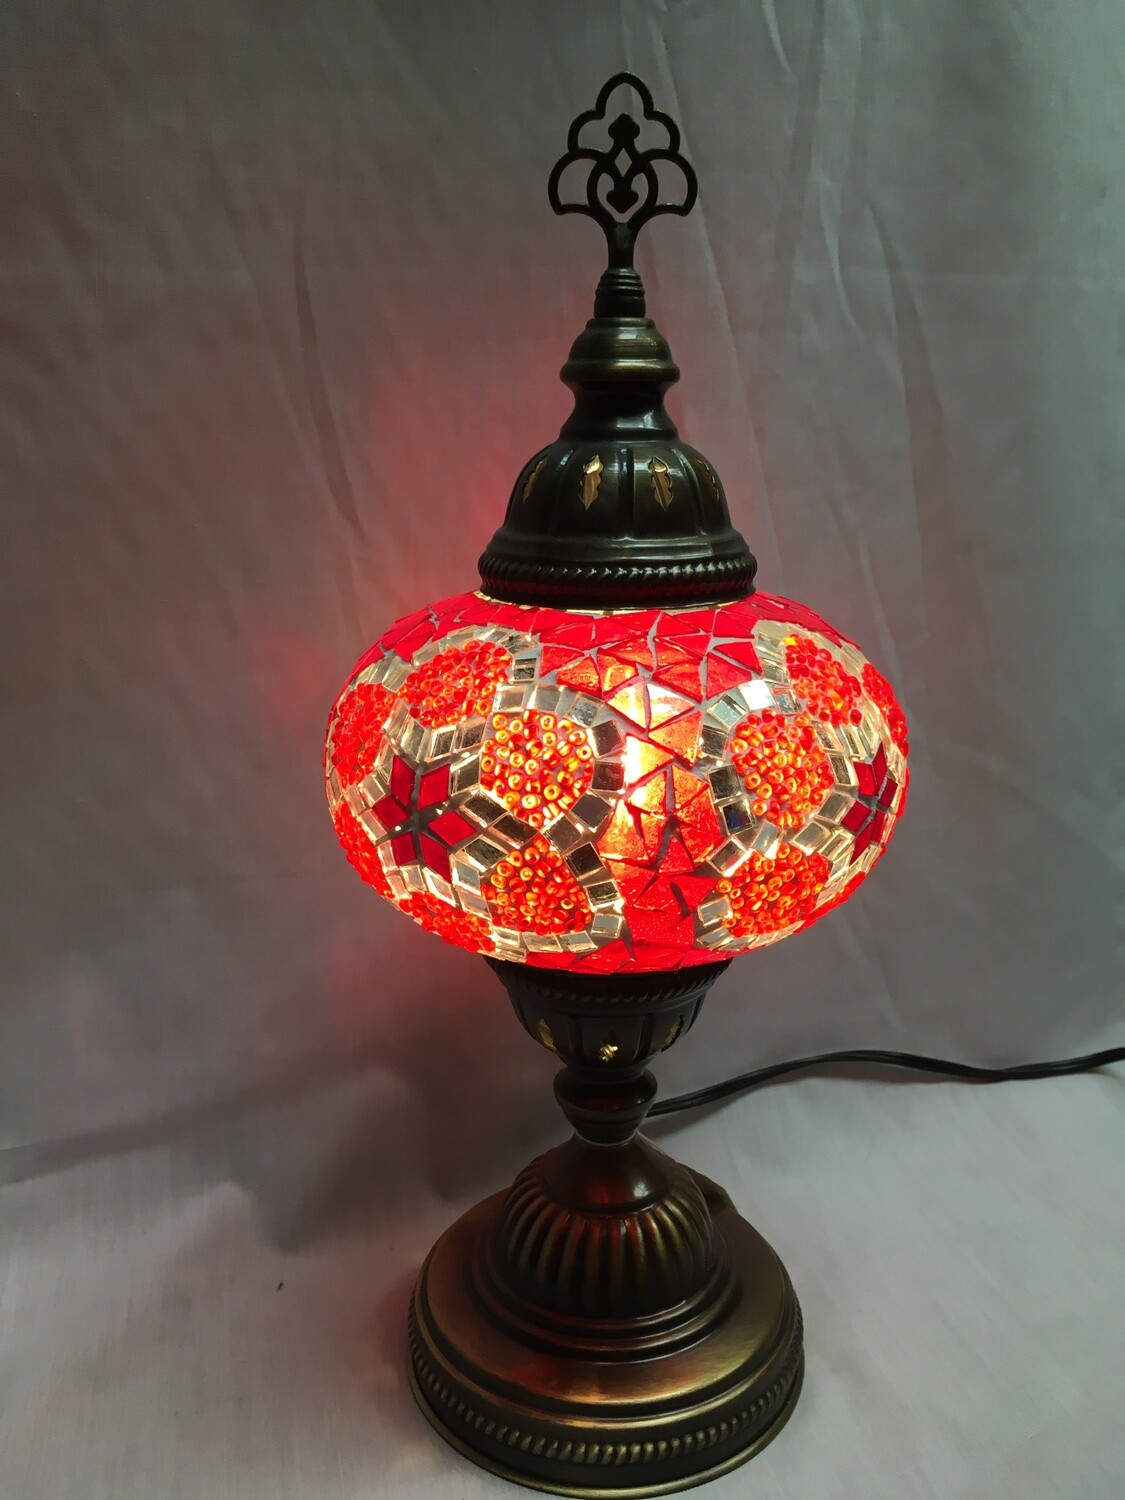 Mosaic Glass Table Lamp - Large, Red Pinwheel